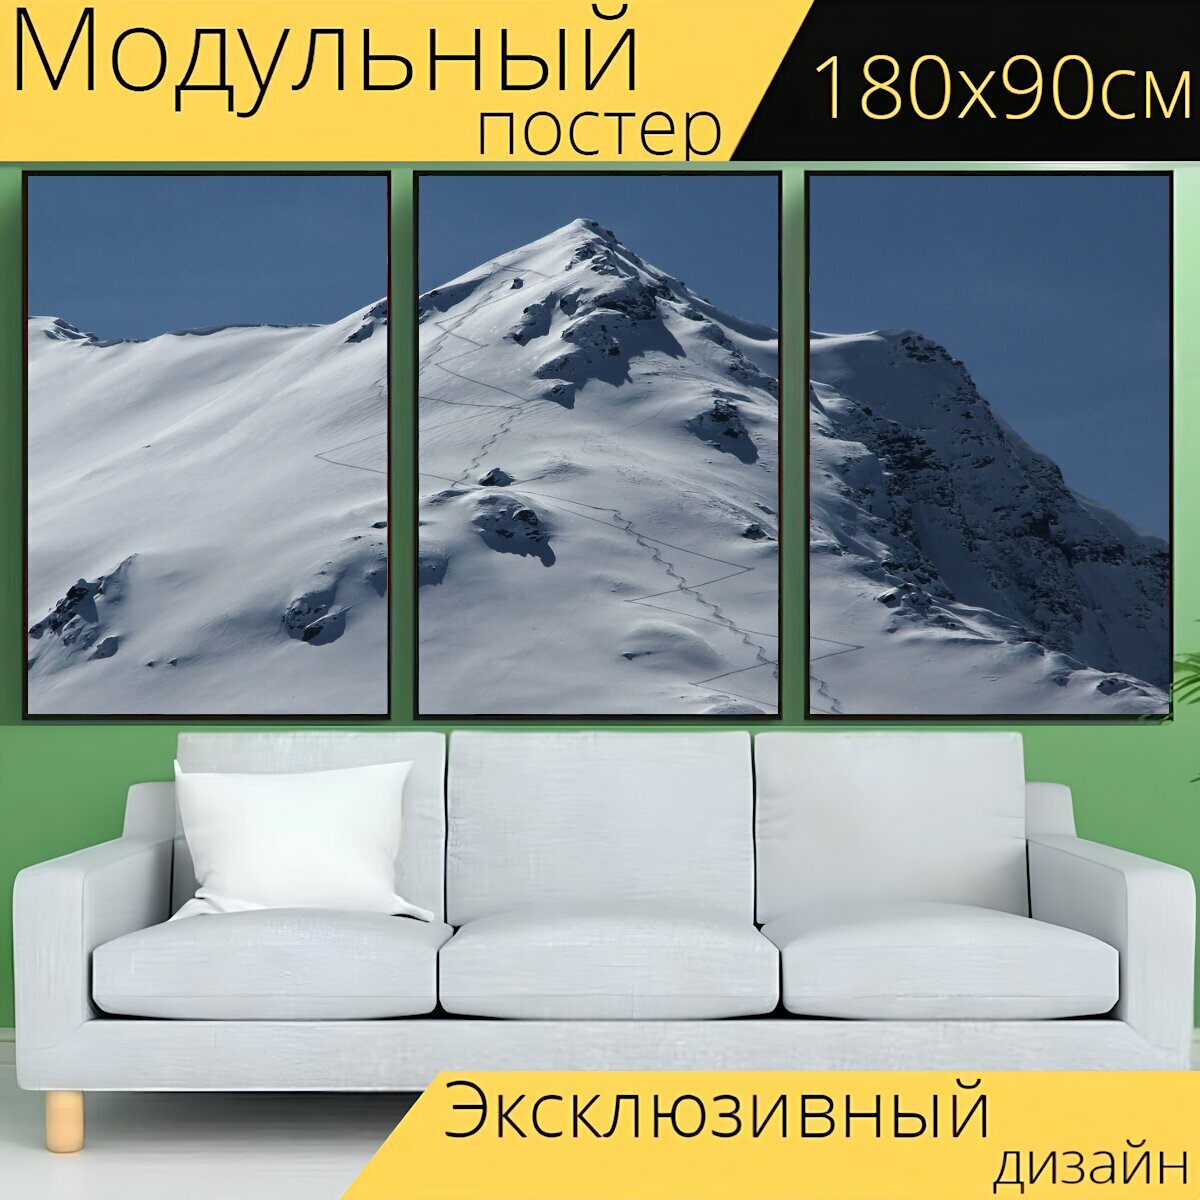 Модульный постер "Туристические лыжи, горные лыжи, снег" 180 x 90 см. для интерьера